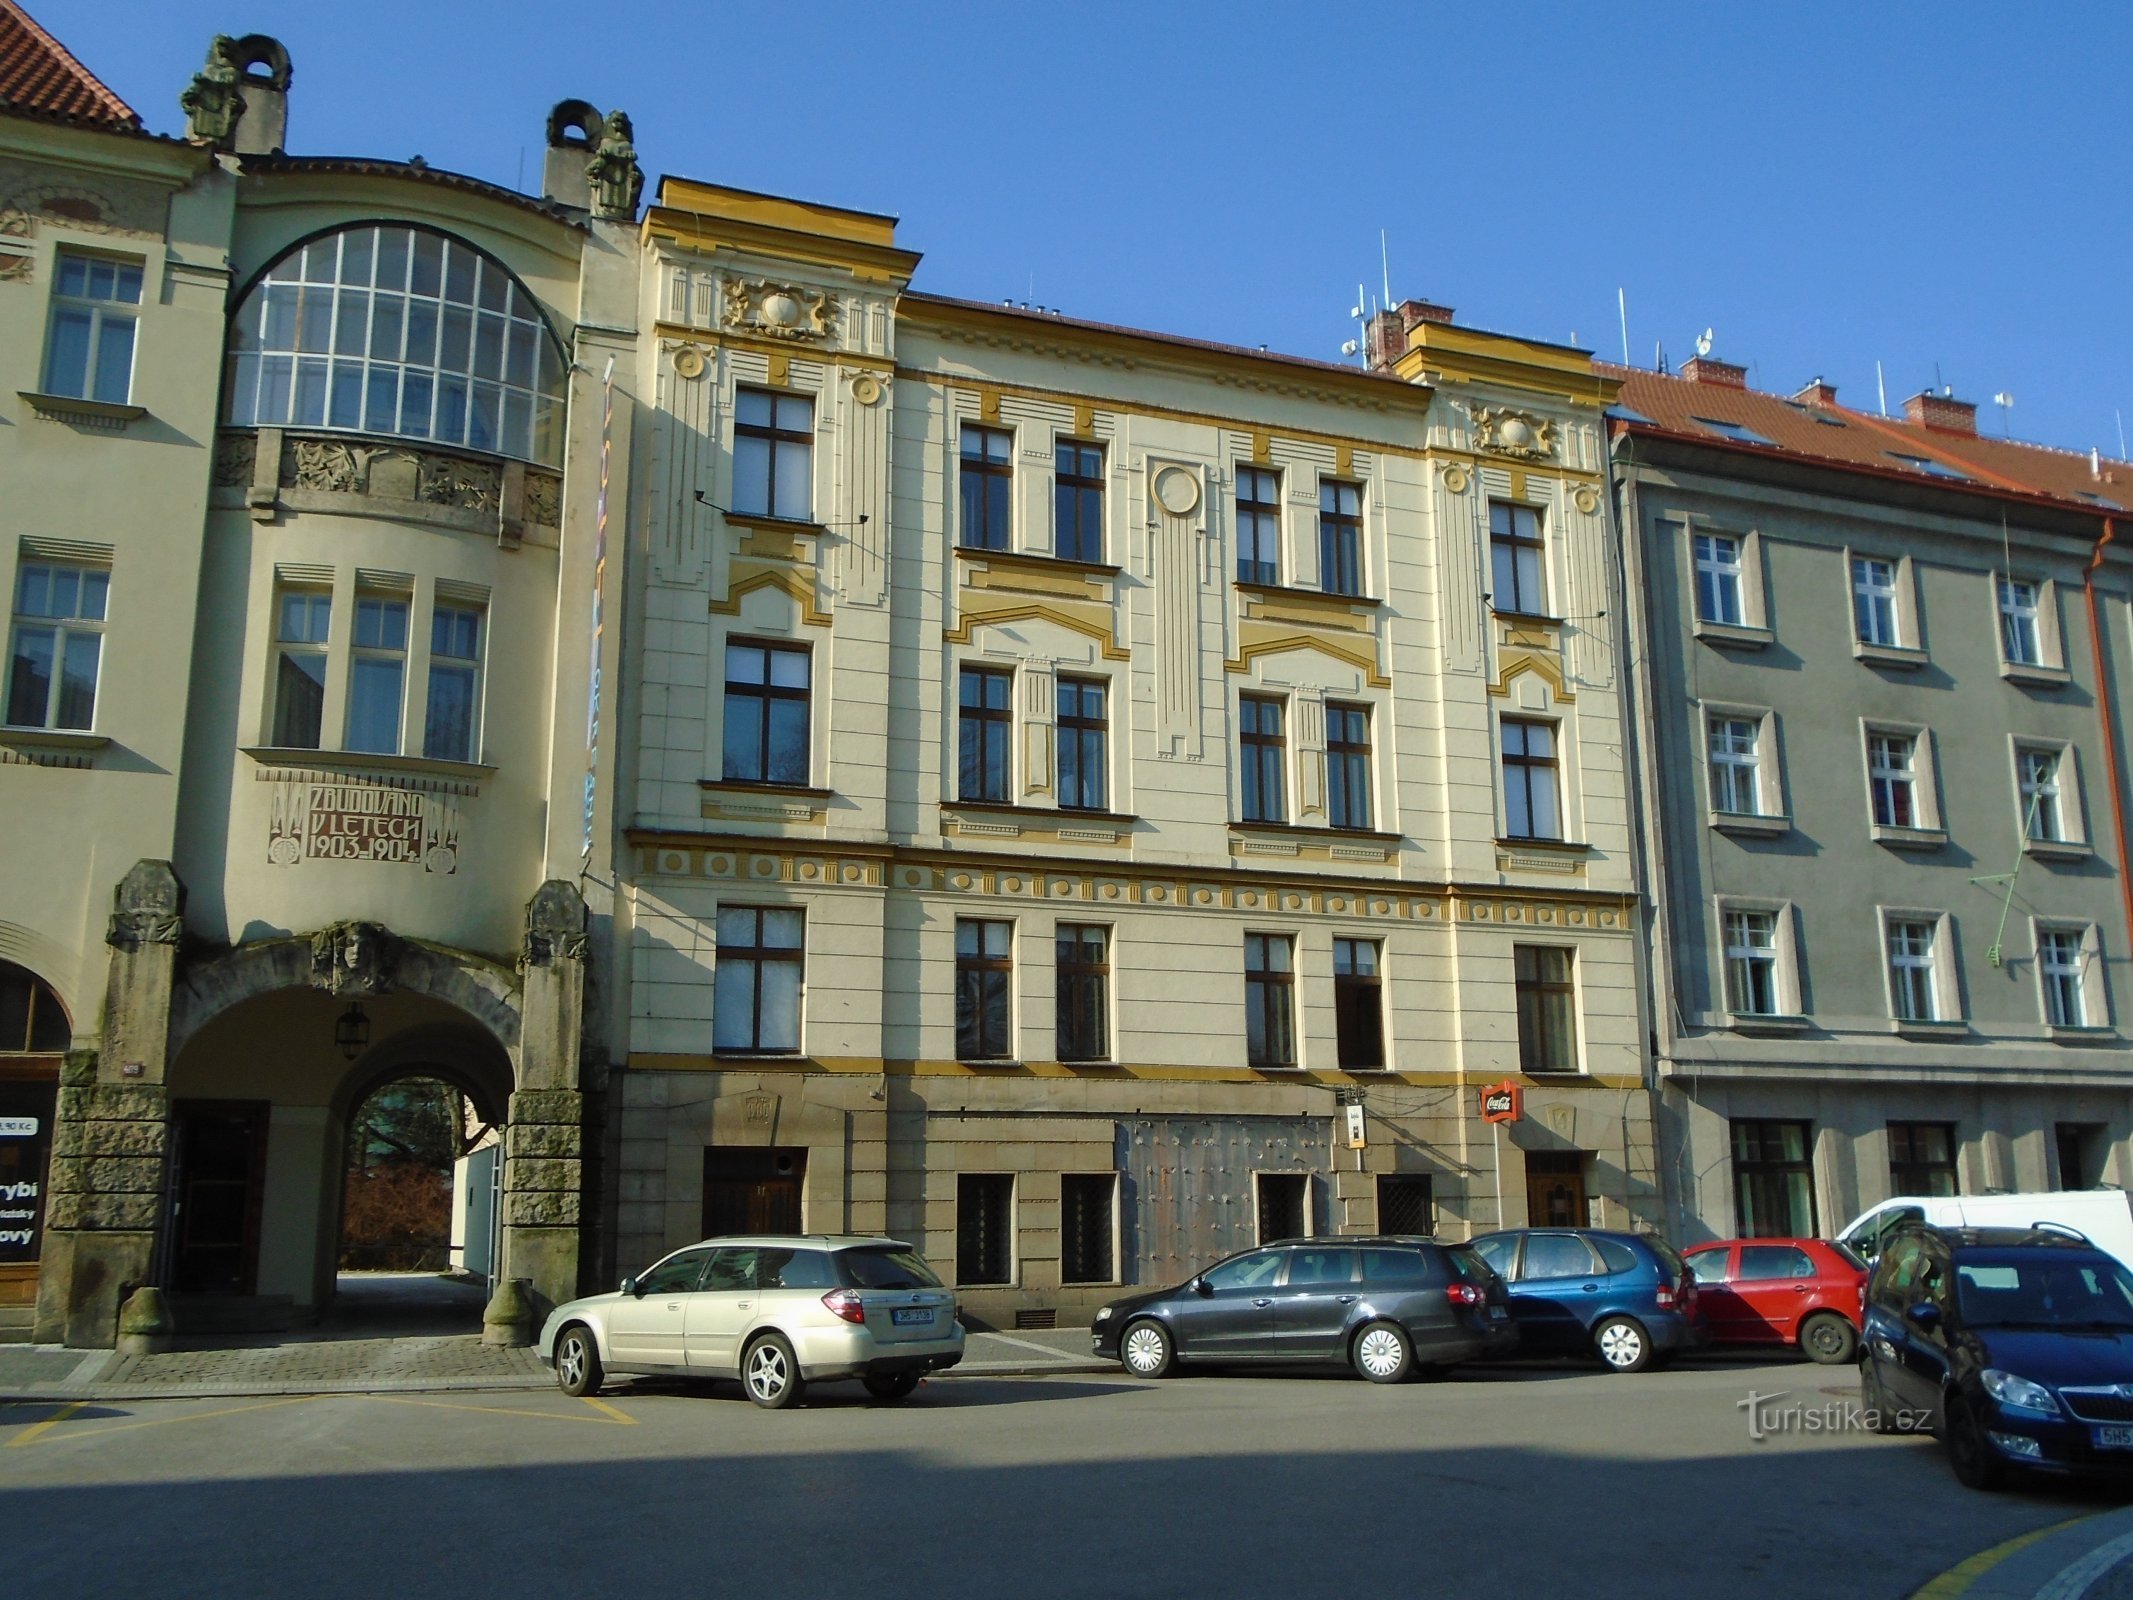 Palackého br. 359 (Hradec Králové)